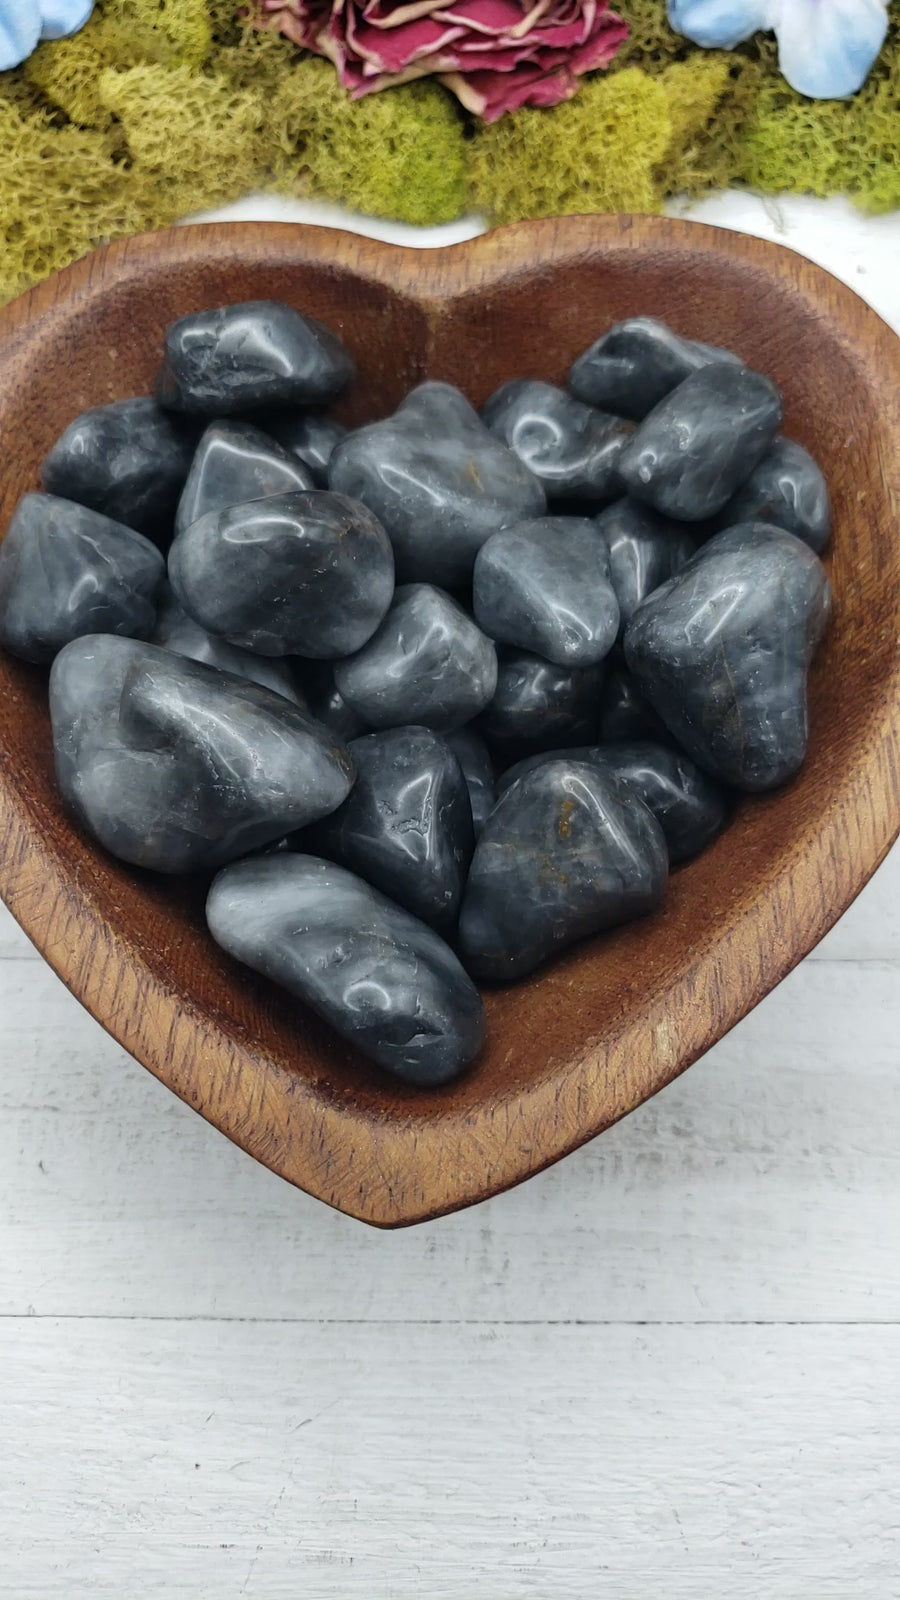 Silver Mist Grey Jasper stones in heart-shaped bowl